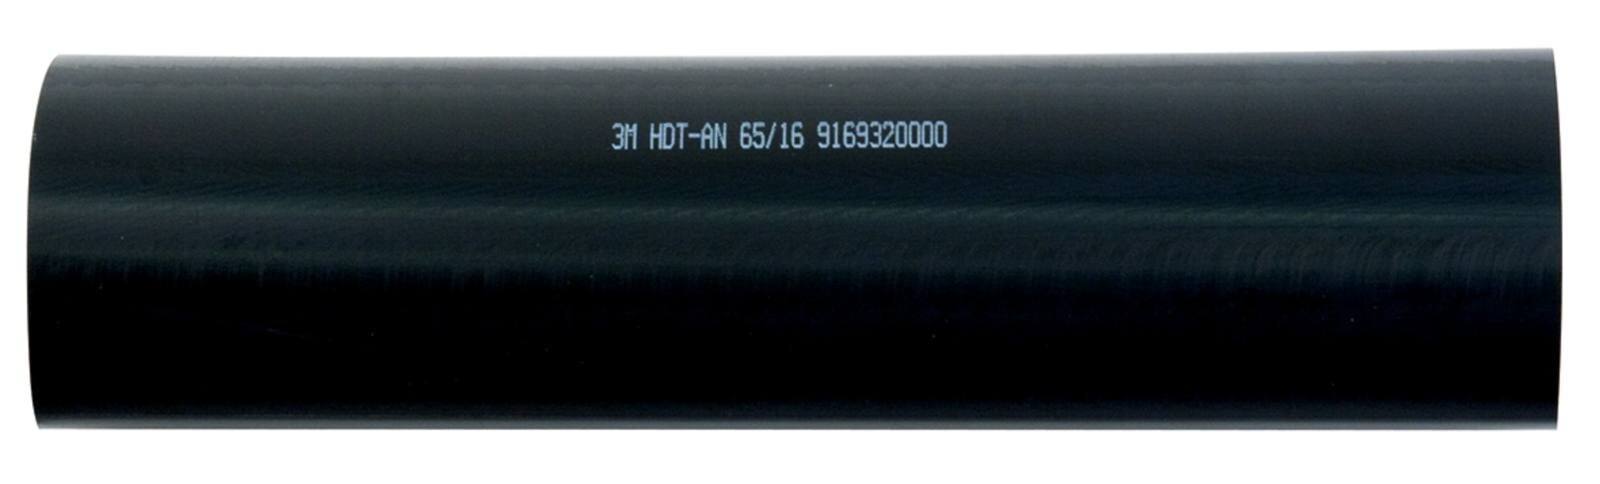  3M HDT-AN Paksuseinäinen lämpökutisteputki liimalla, musta, 65/16 mm, 1 m